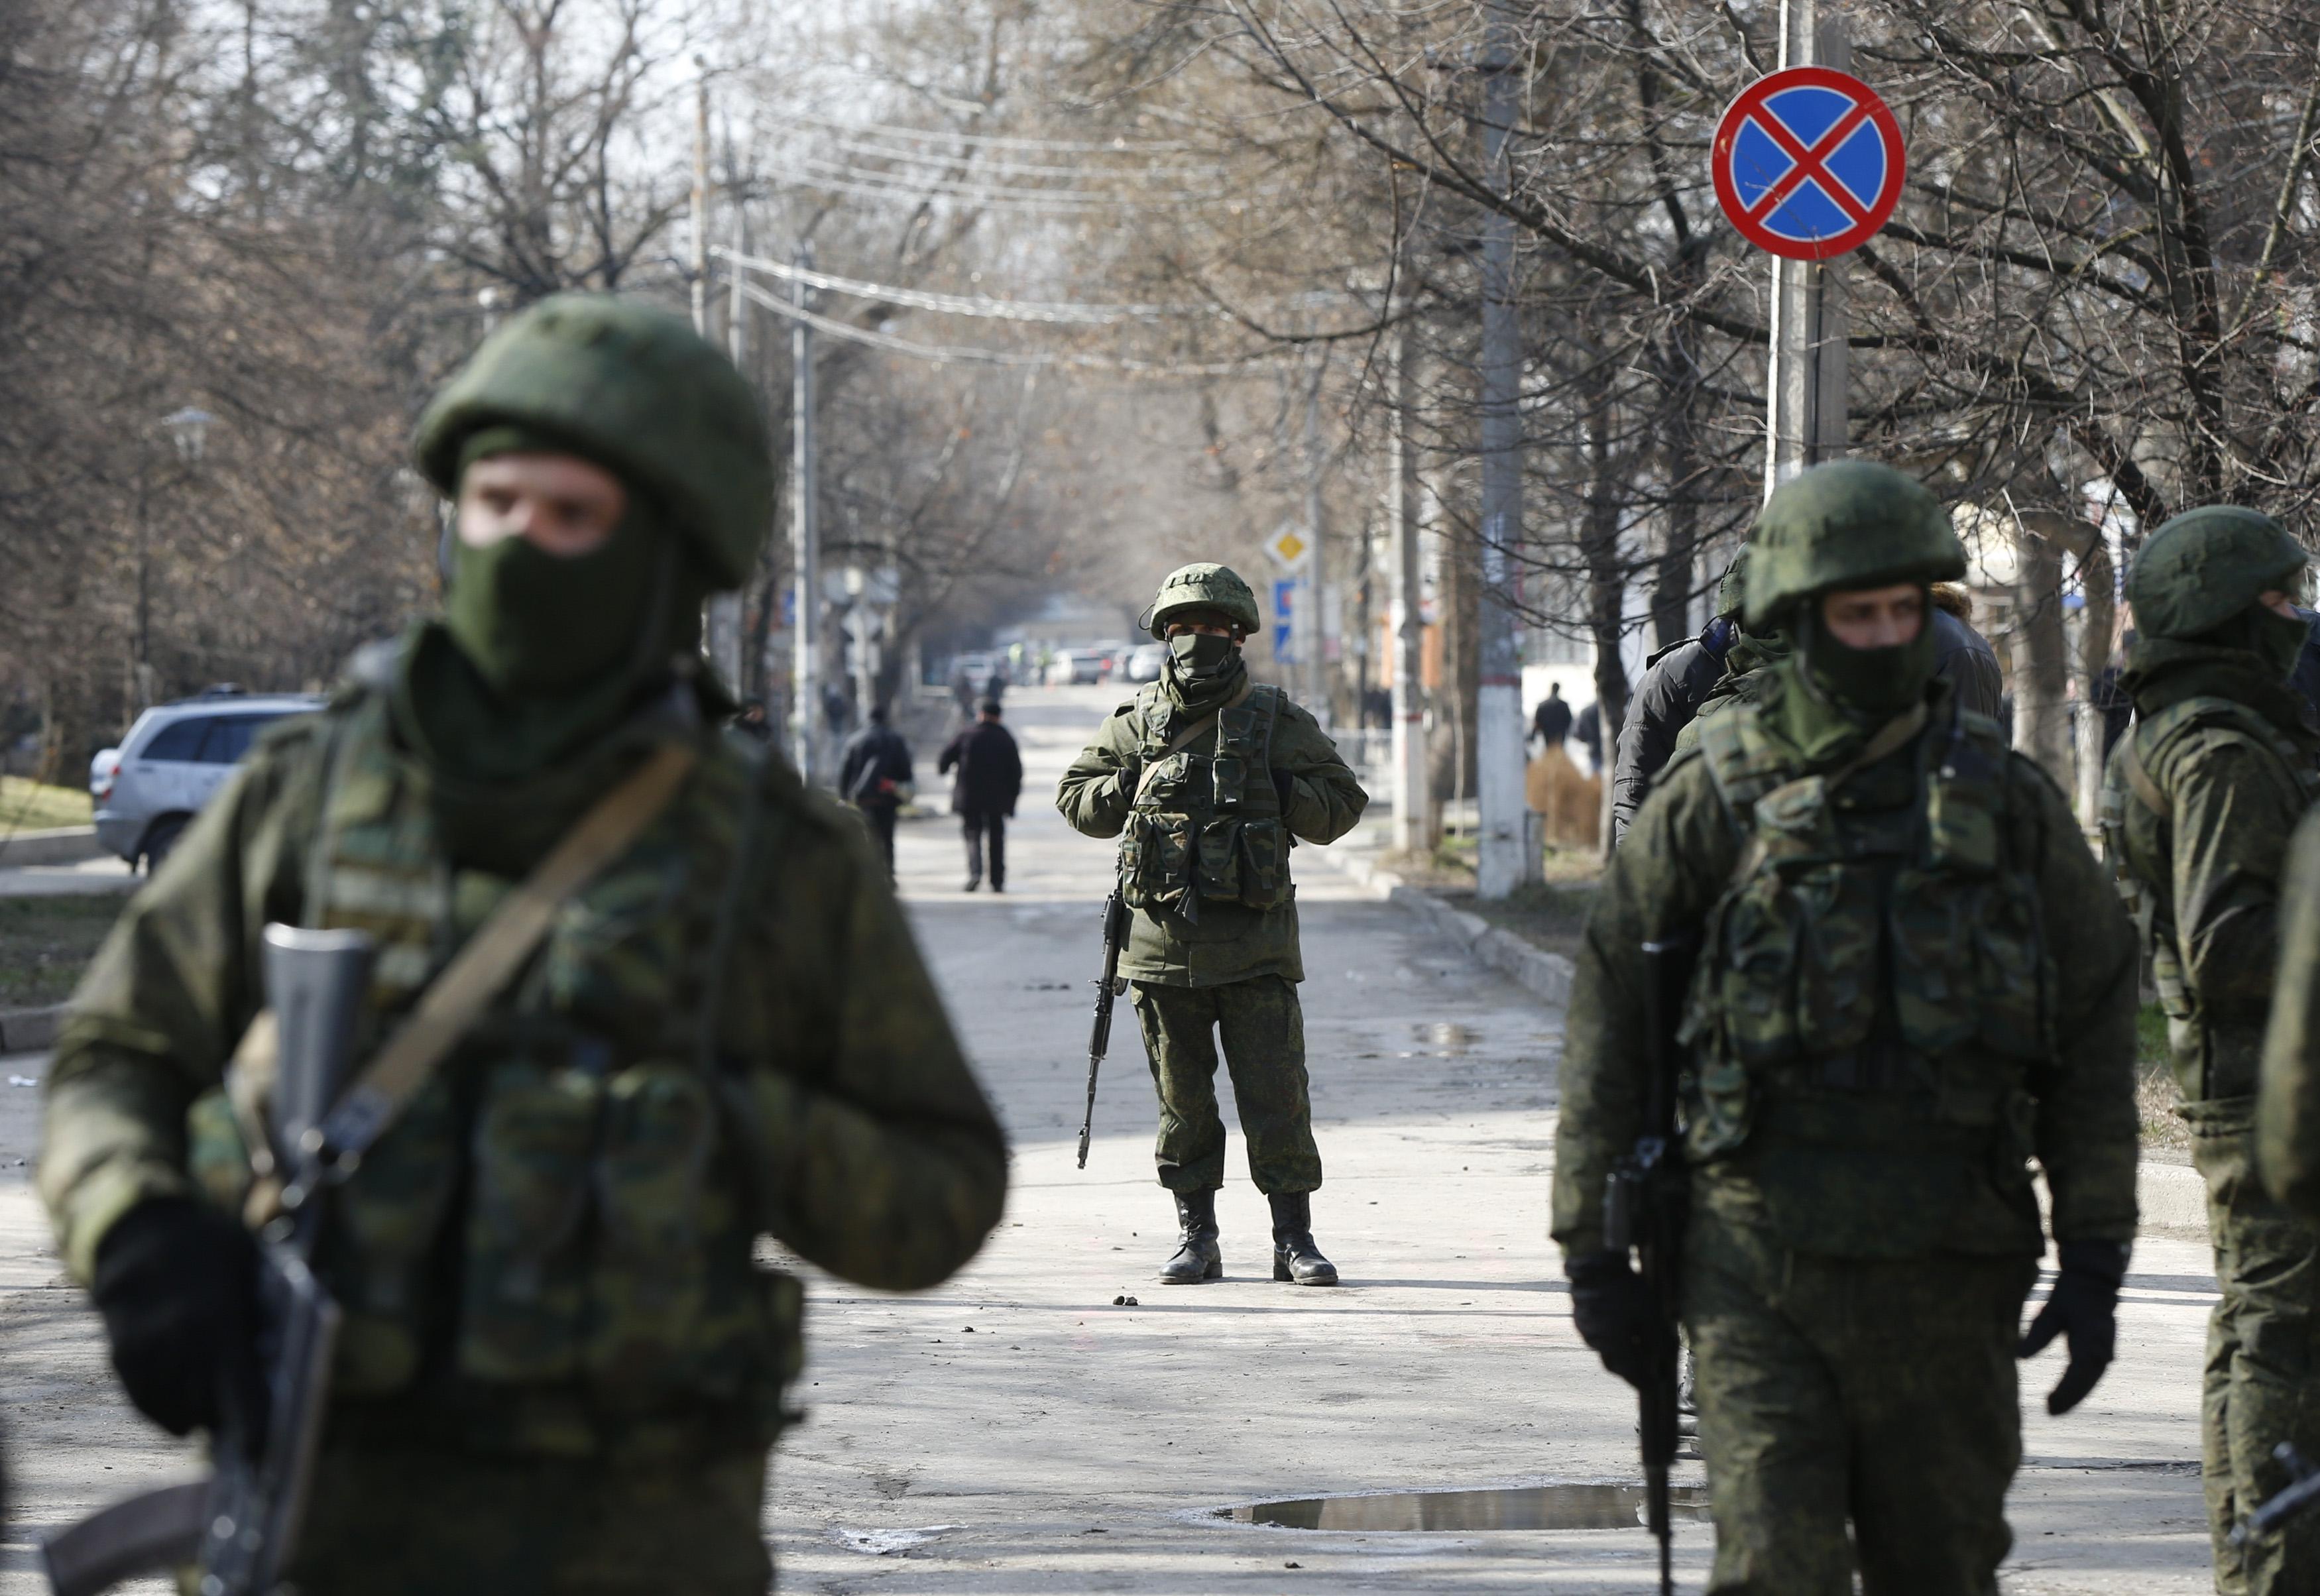 Ο πόλεμος στην Ουκρανία, οι αδέξιοι Ευρωπαίοι και η ελληνική αμηχανία